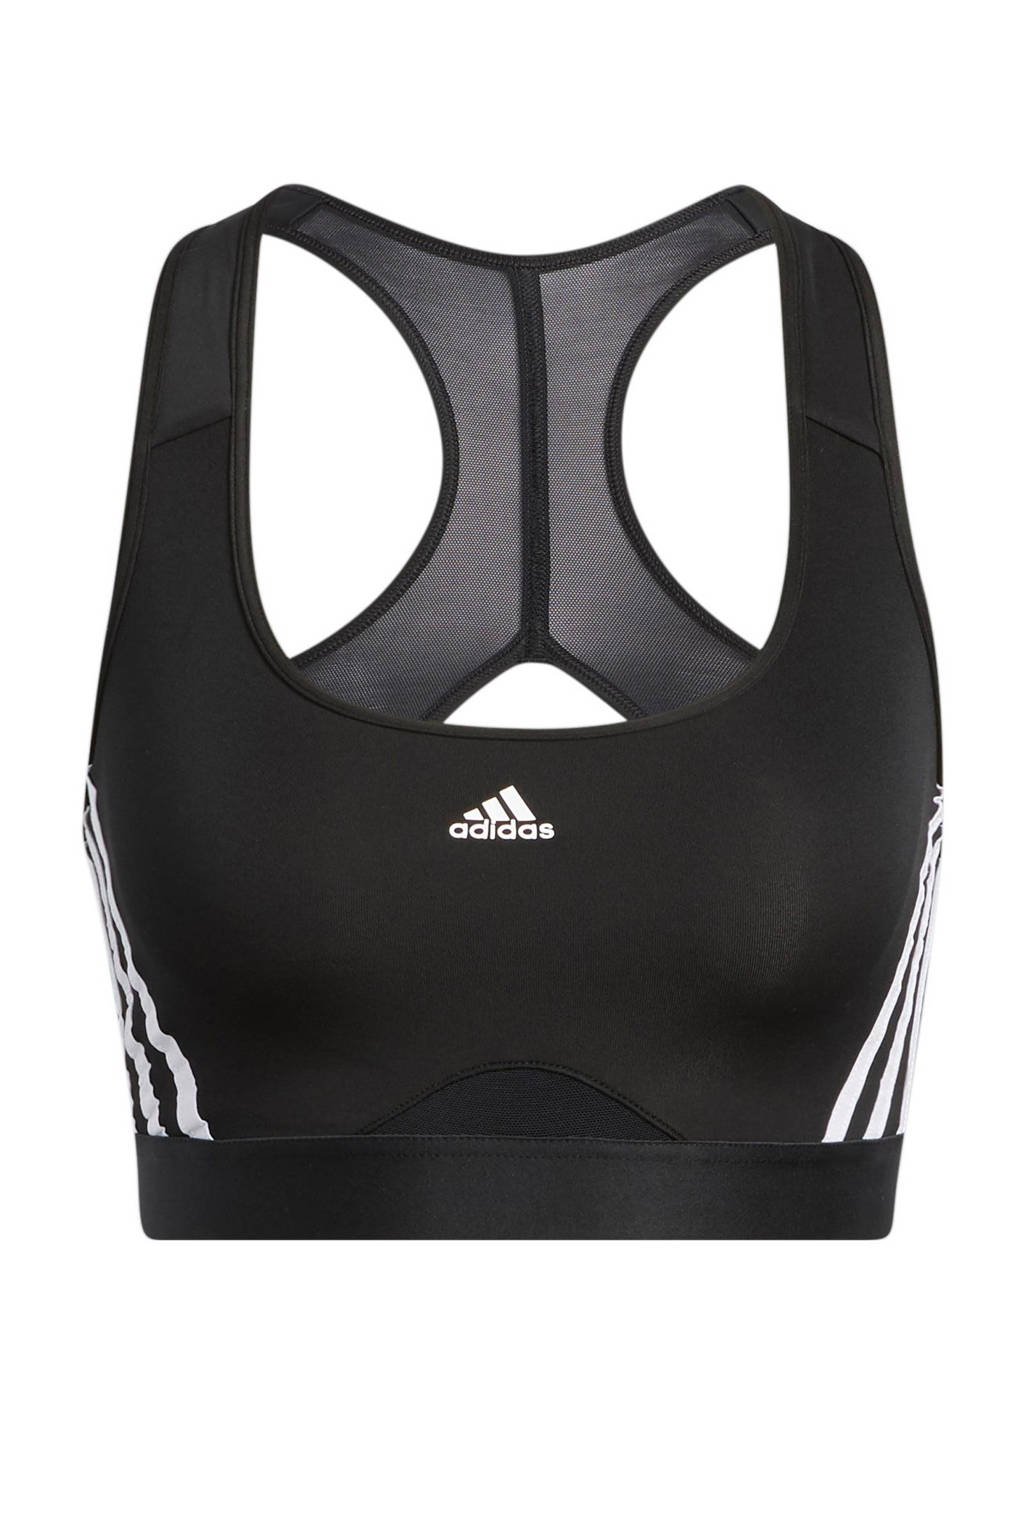 adidas Performance level 3 sportbh zwart/wit, Zwart/wit